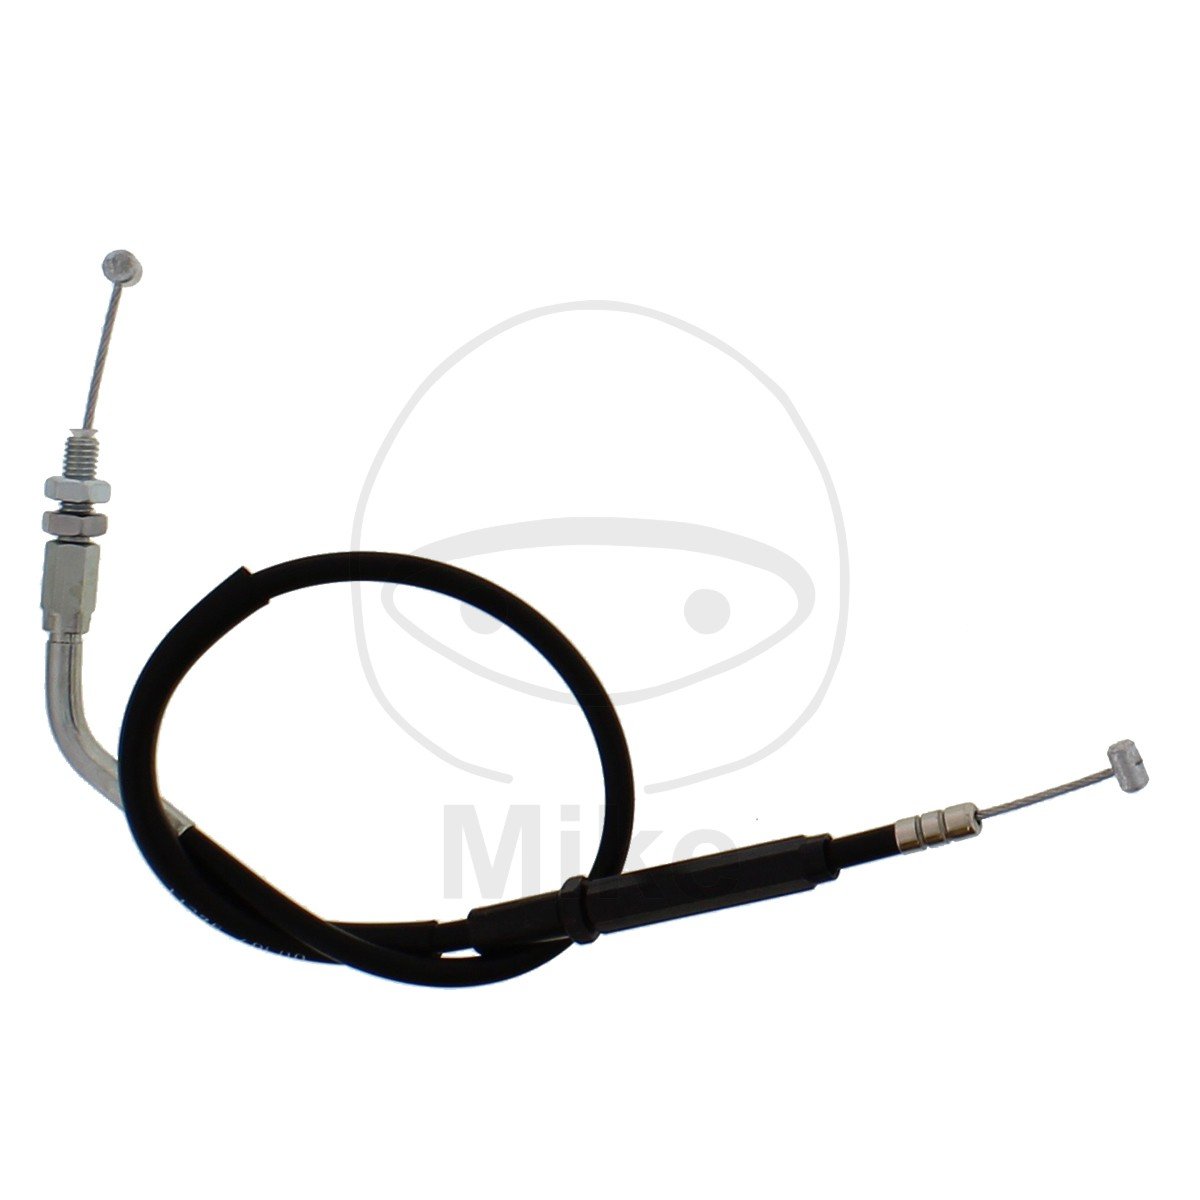 Obrázek produktu Exup valve cable JMT 1